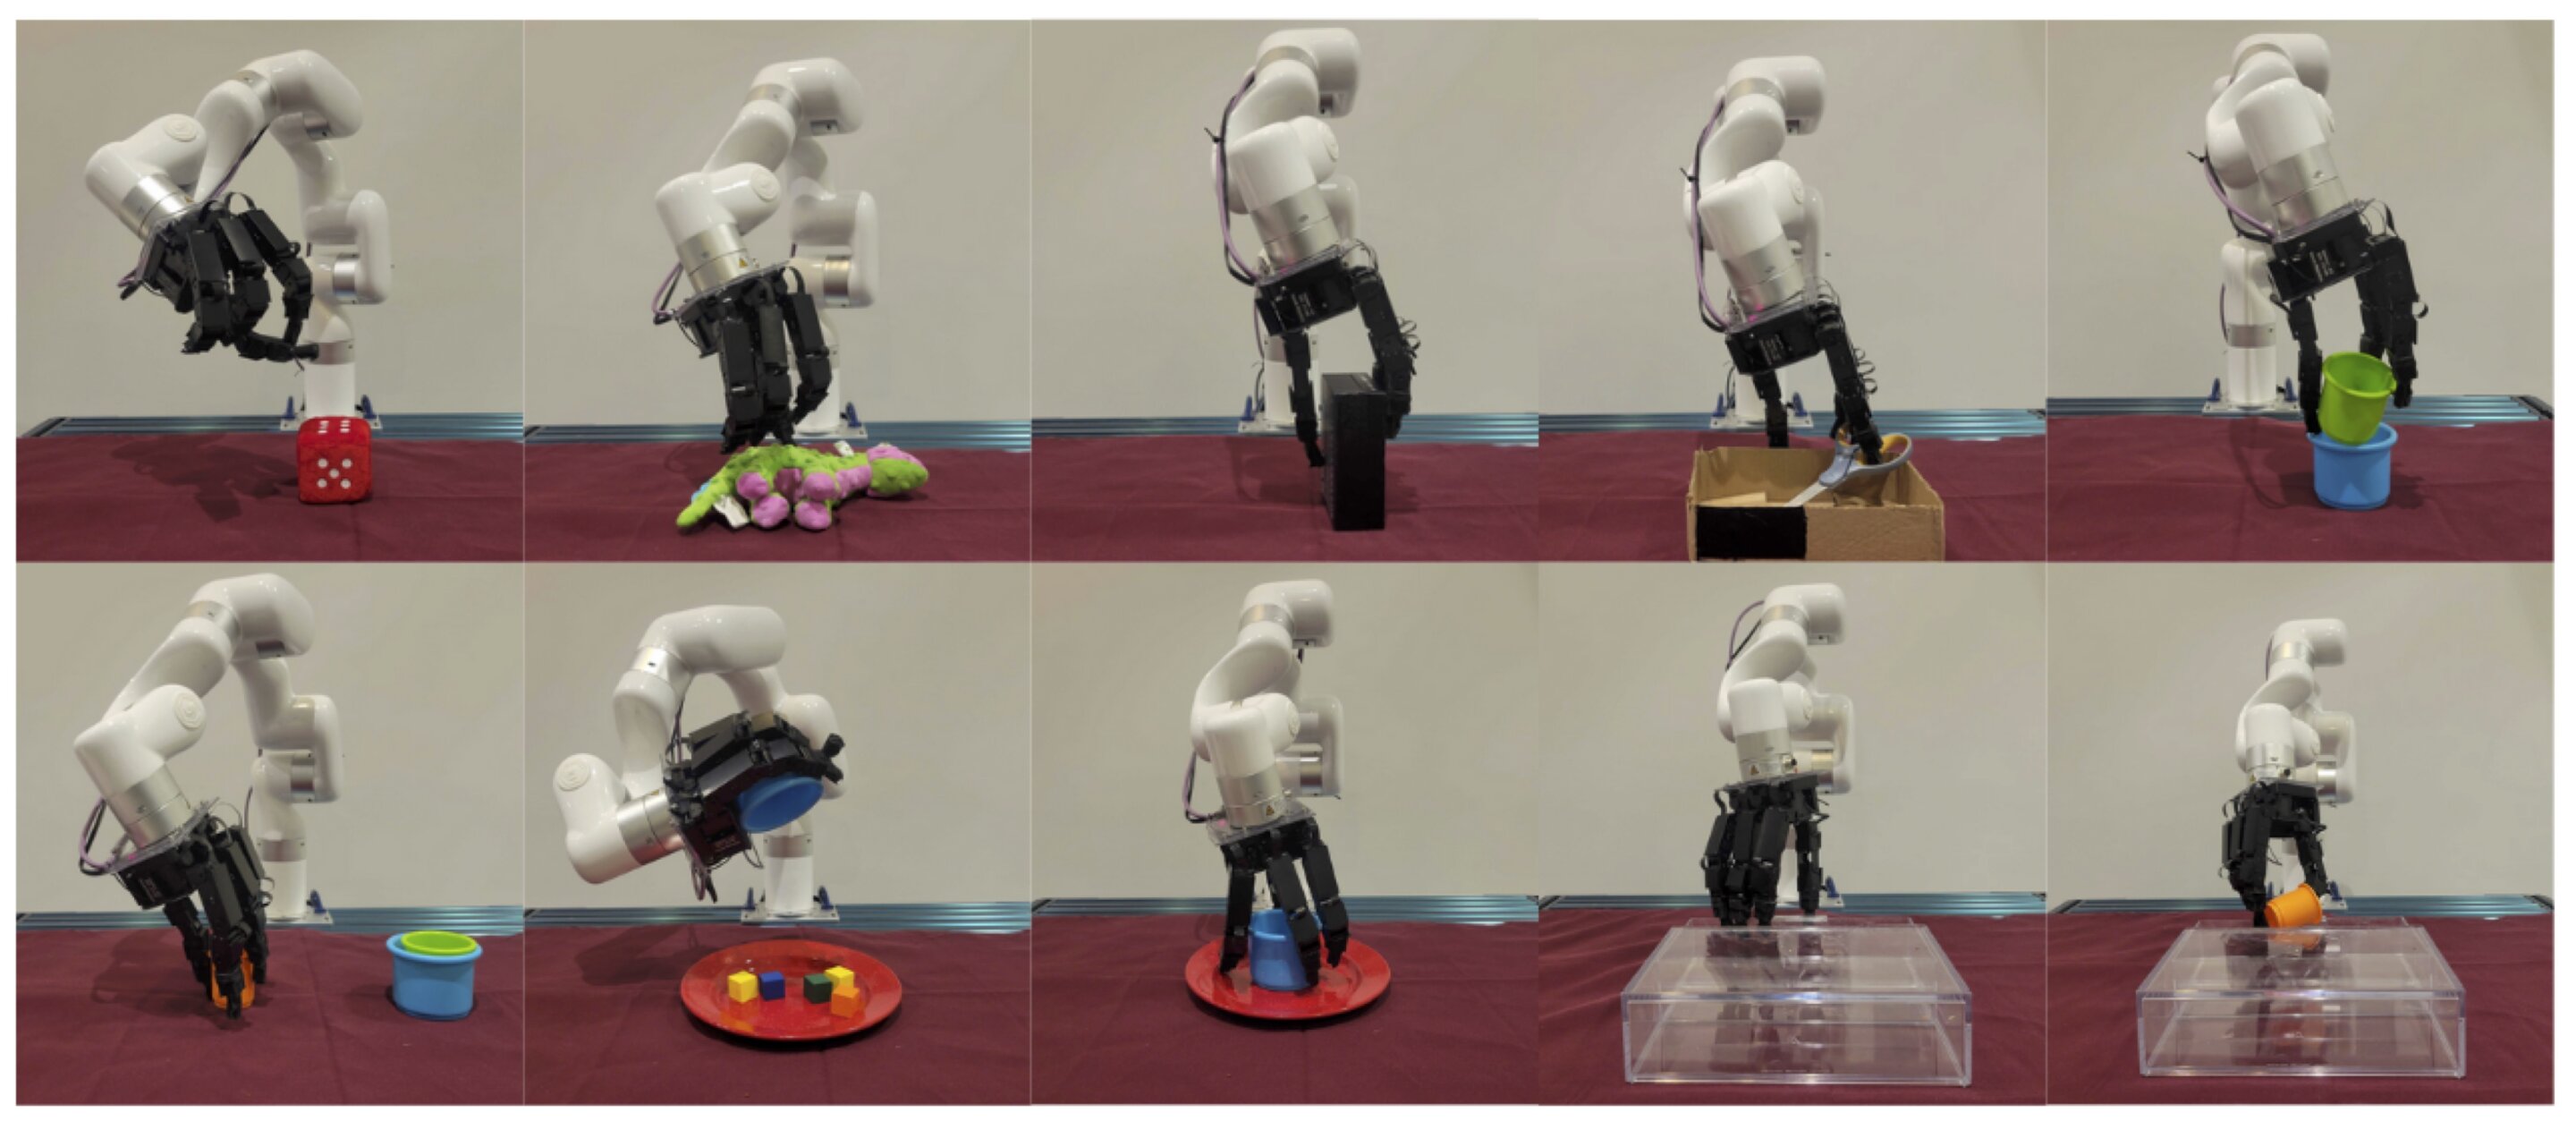 Роботизированный телекинез: позволяет людям дистанционно управлять роботизированными руками и обучать их